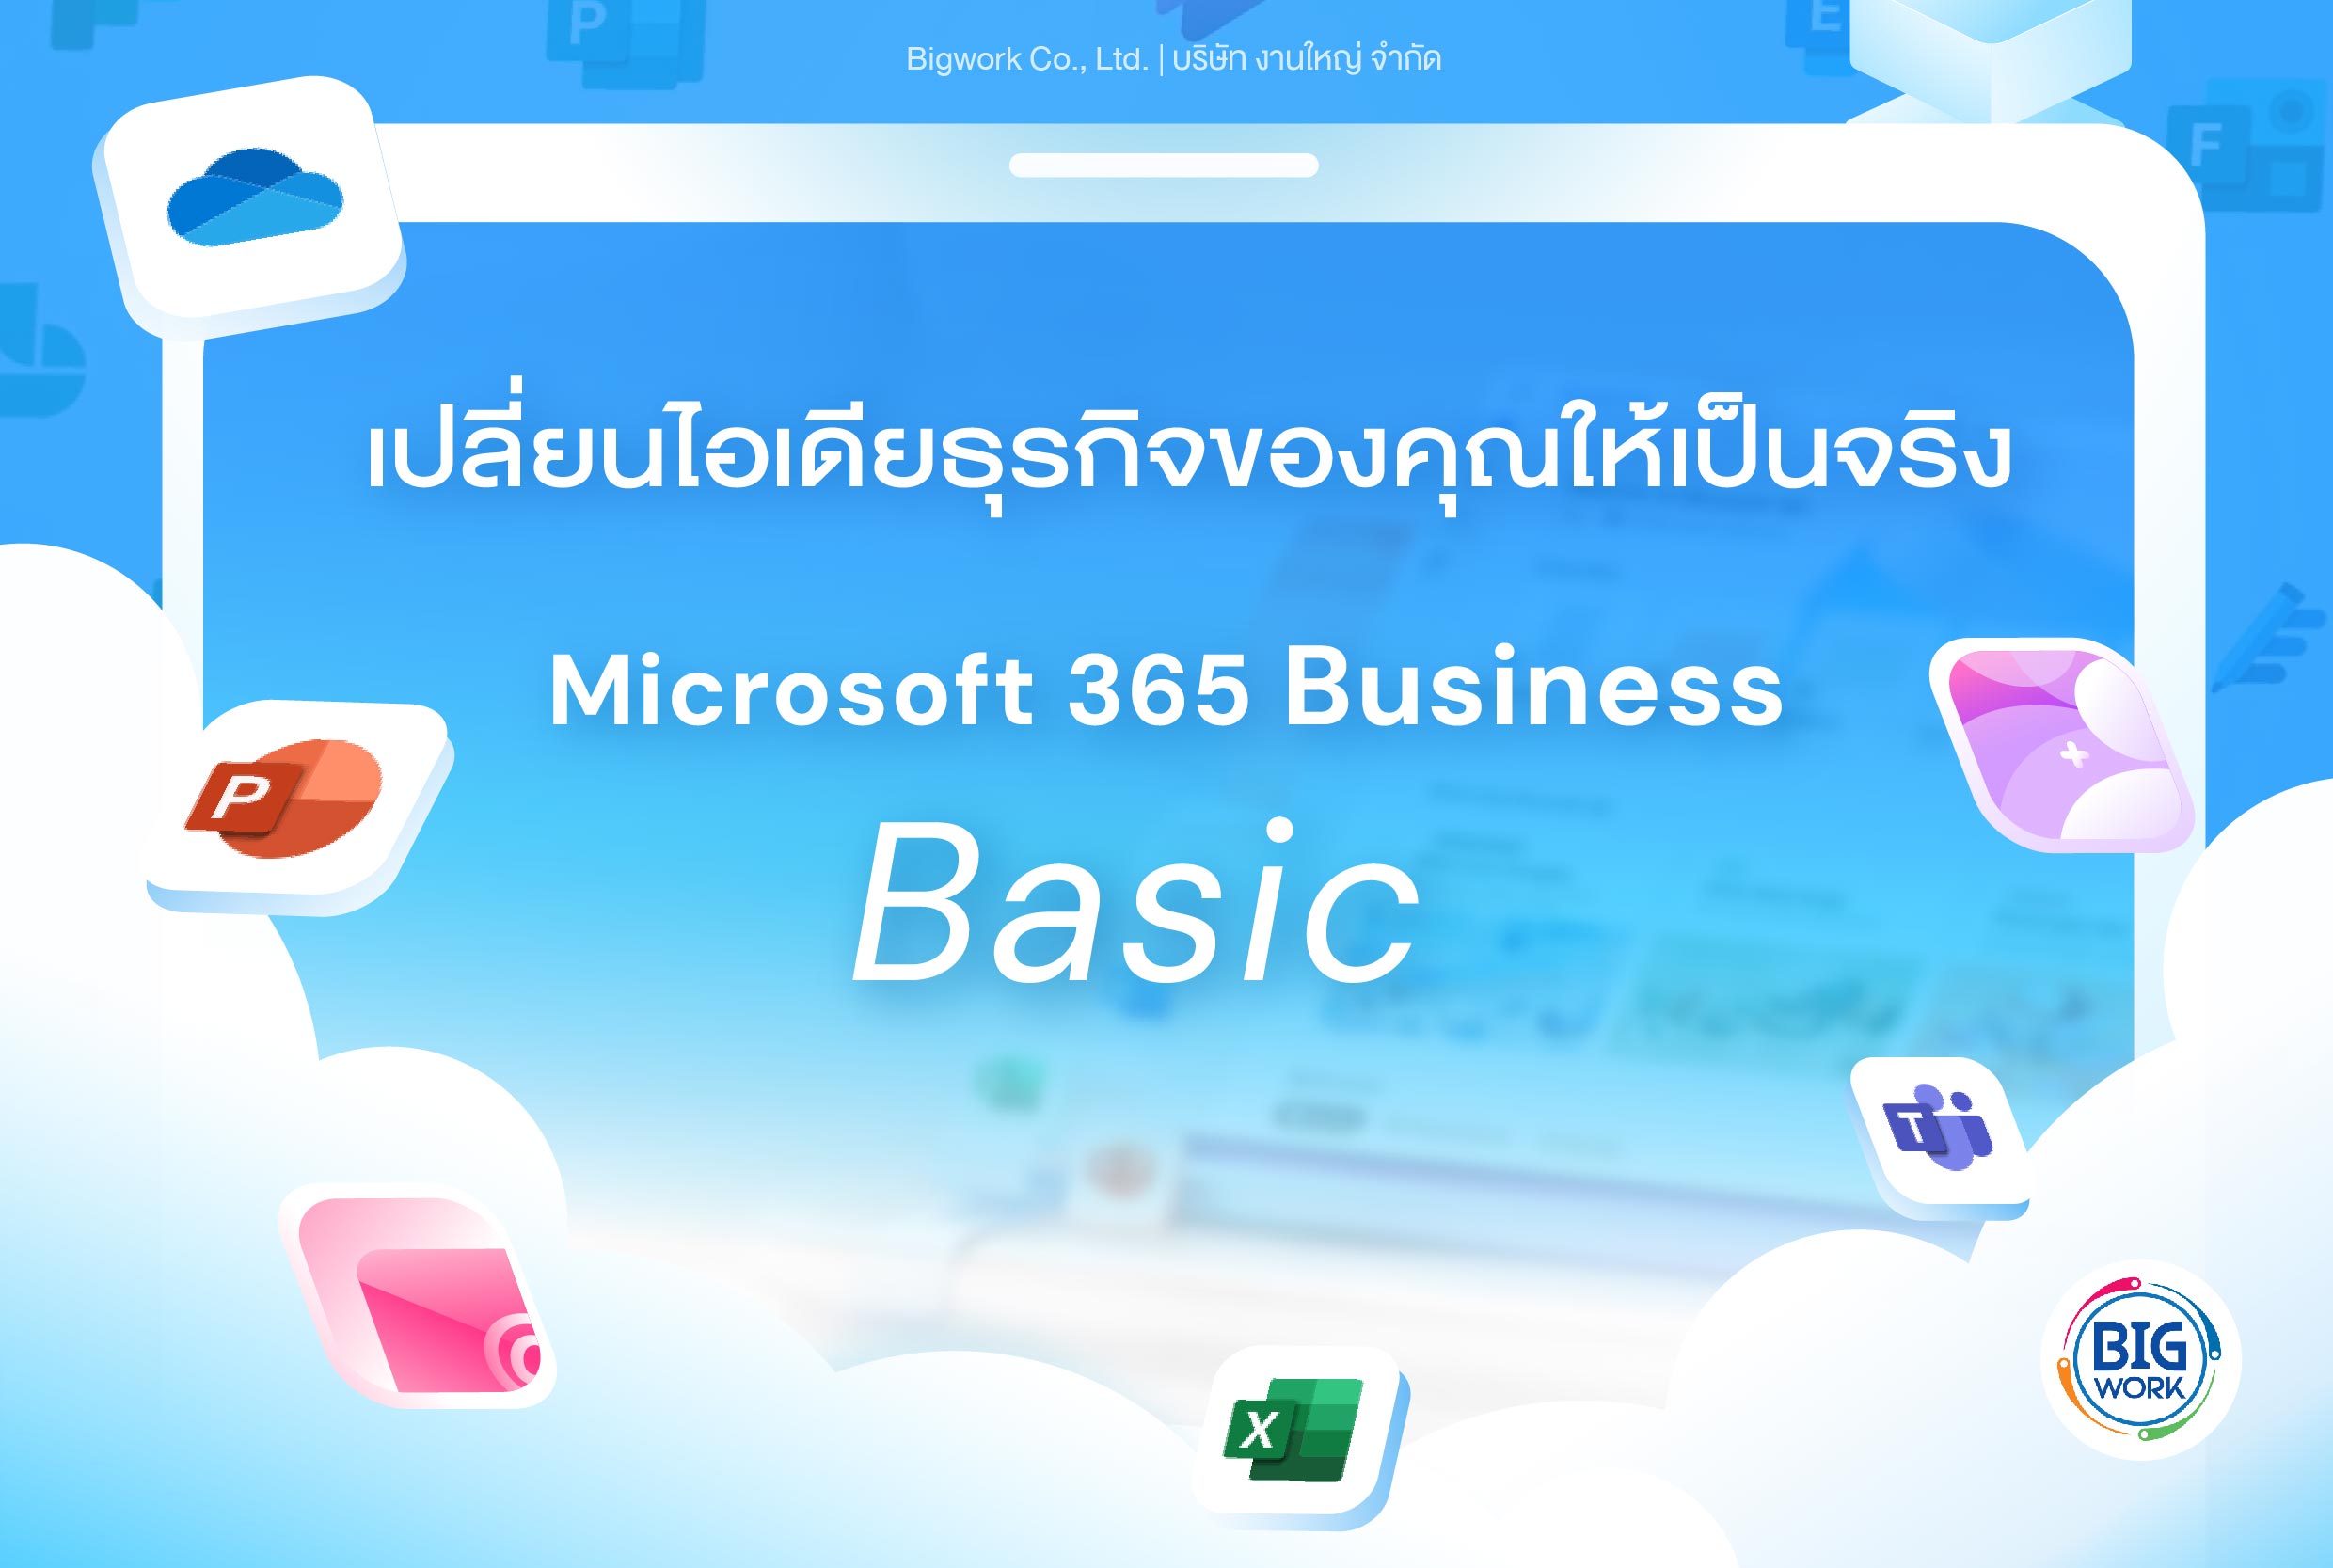 เปลี่ยนไอเดียธุรกิจของคุณให้กลายเป็นจริง Microsoft 365 Business Basic